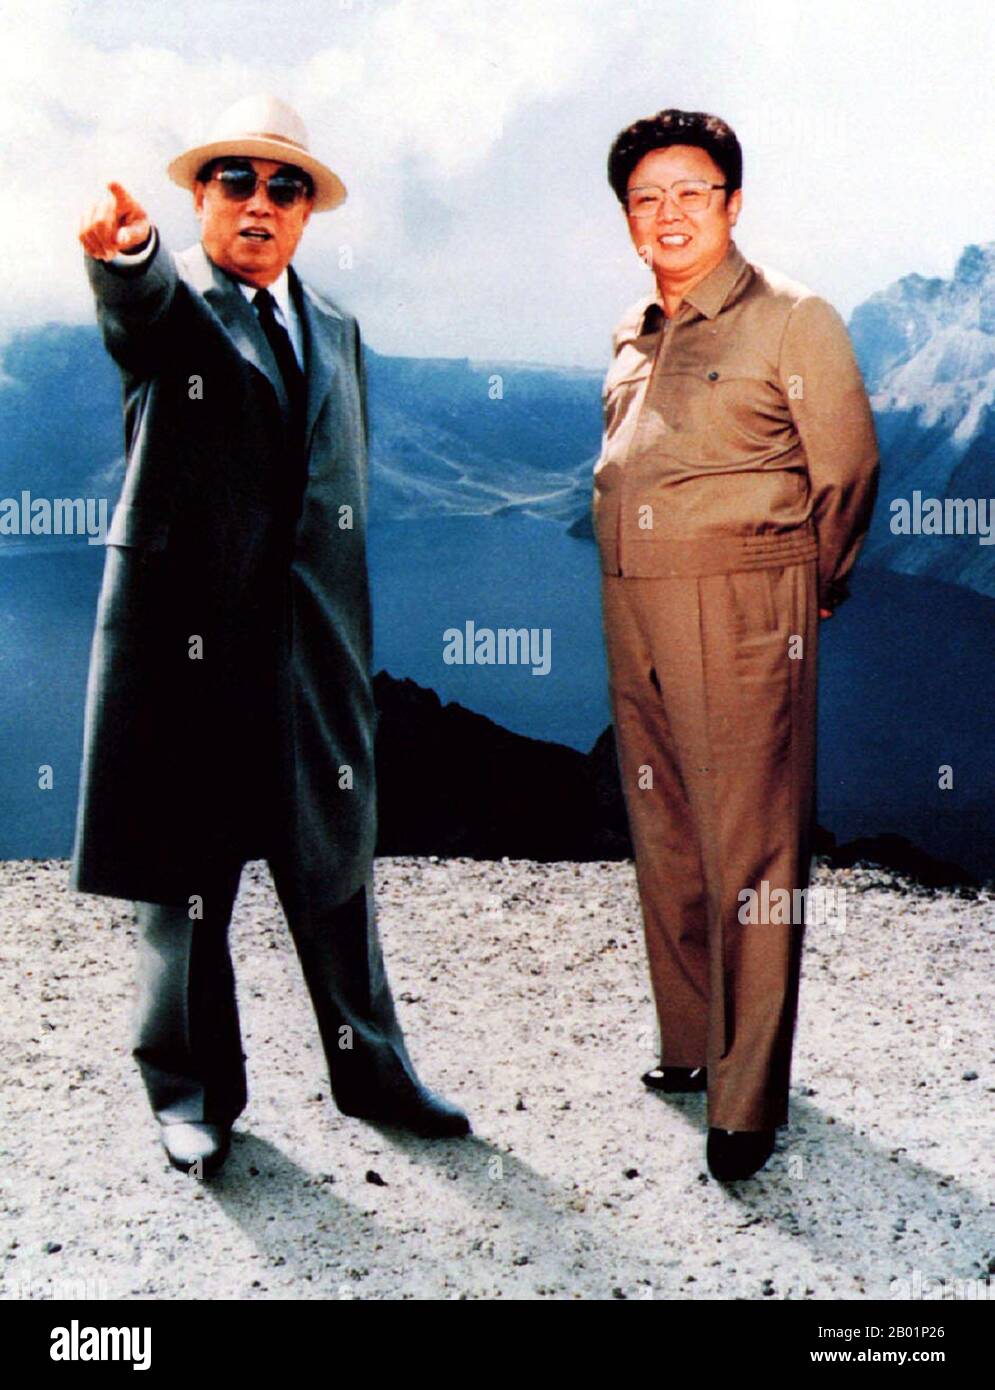 Korea: Propagandafoto des nordkoreanischen Führers Kim Il Sung zusammen mit seinem Erbe und Nachfolger Kim Jong Il auf dem Gipfel des Mt. Baekdu an der chinesischen Grenze, um 1990 Kim Il-sung (* 15. April 1912 bis 8. Juli 1994) war ein koreanischer kommunistischer Politiker, der Nordkorea, offiziell die Demokratische Volksrepublik Korea, von seiner Gründung 1948 bis zu seinem Tod 1994 regierte. Von 1948 bis 1972 war er Premierminister und von 1972 bis zu seinem Tod Präsident. Von 1949 bis 1994 war er Vorsitzender der Arbeiterpartei Koreas (von 1949 bis 1966 Vorsitzender). Stockfoto